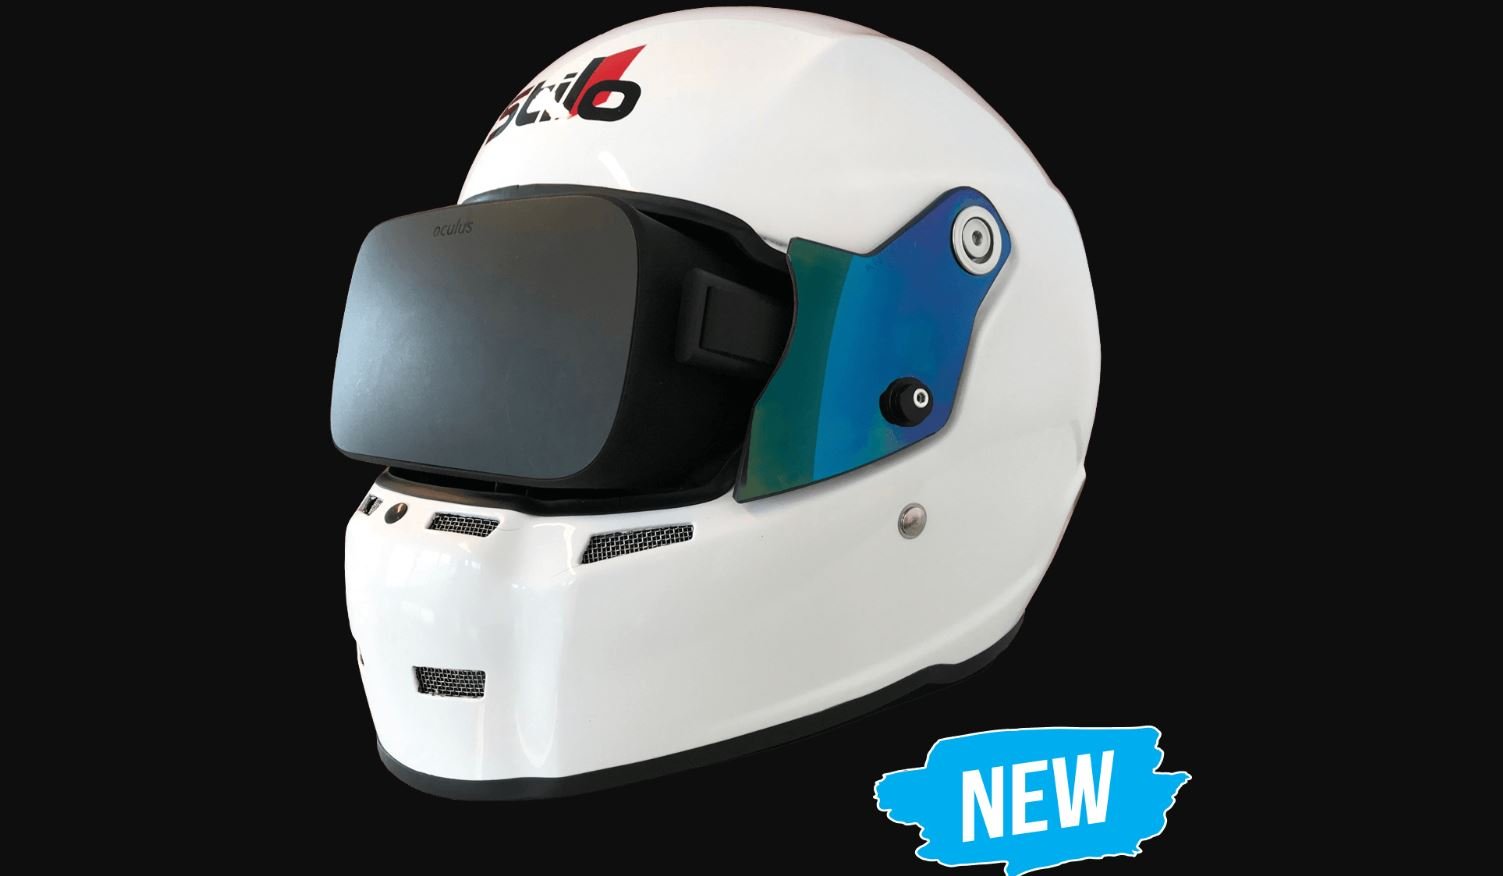 More information about "Stilo ST5VR: arriva il casco Stilo specifico per Oculus Rift!"